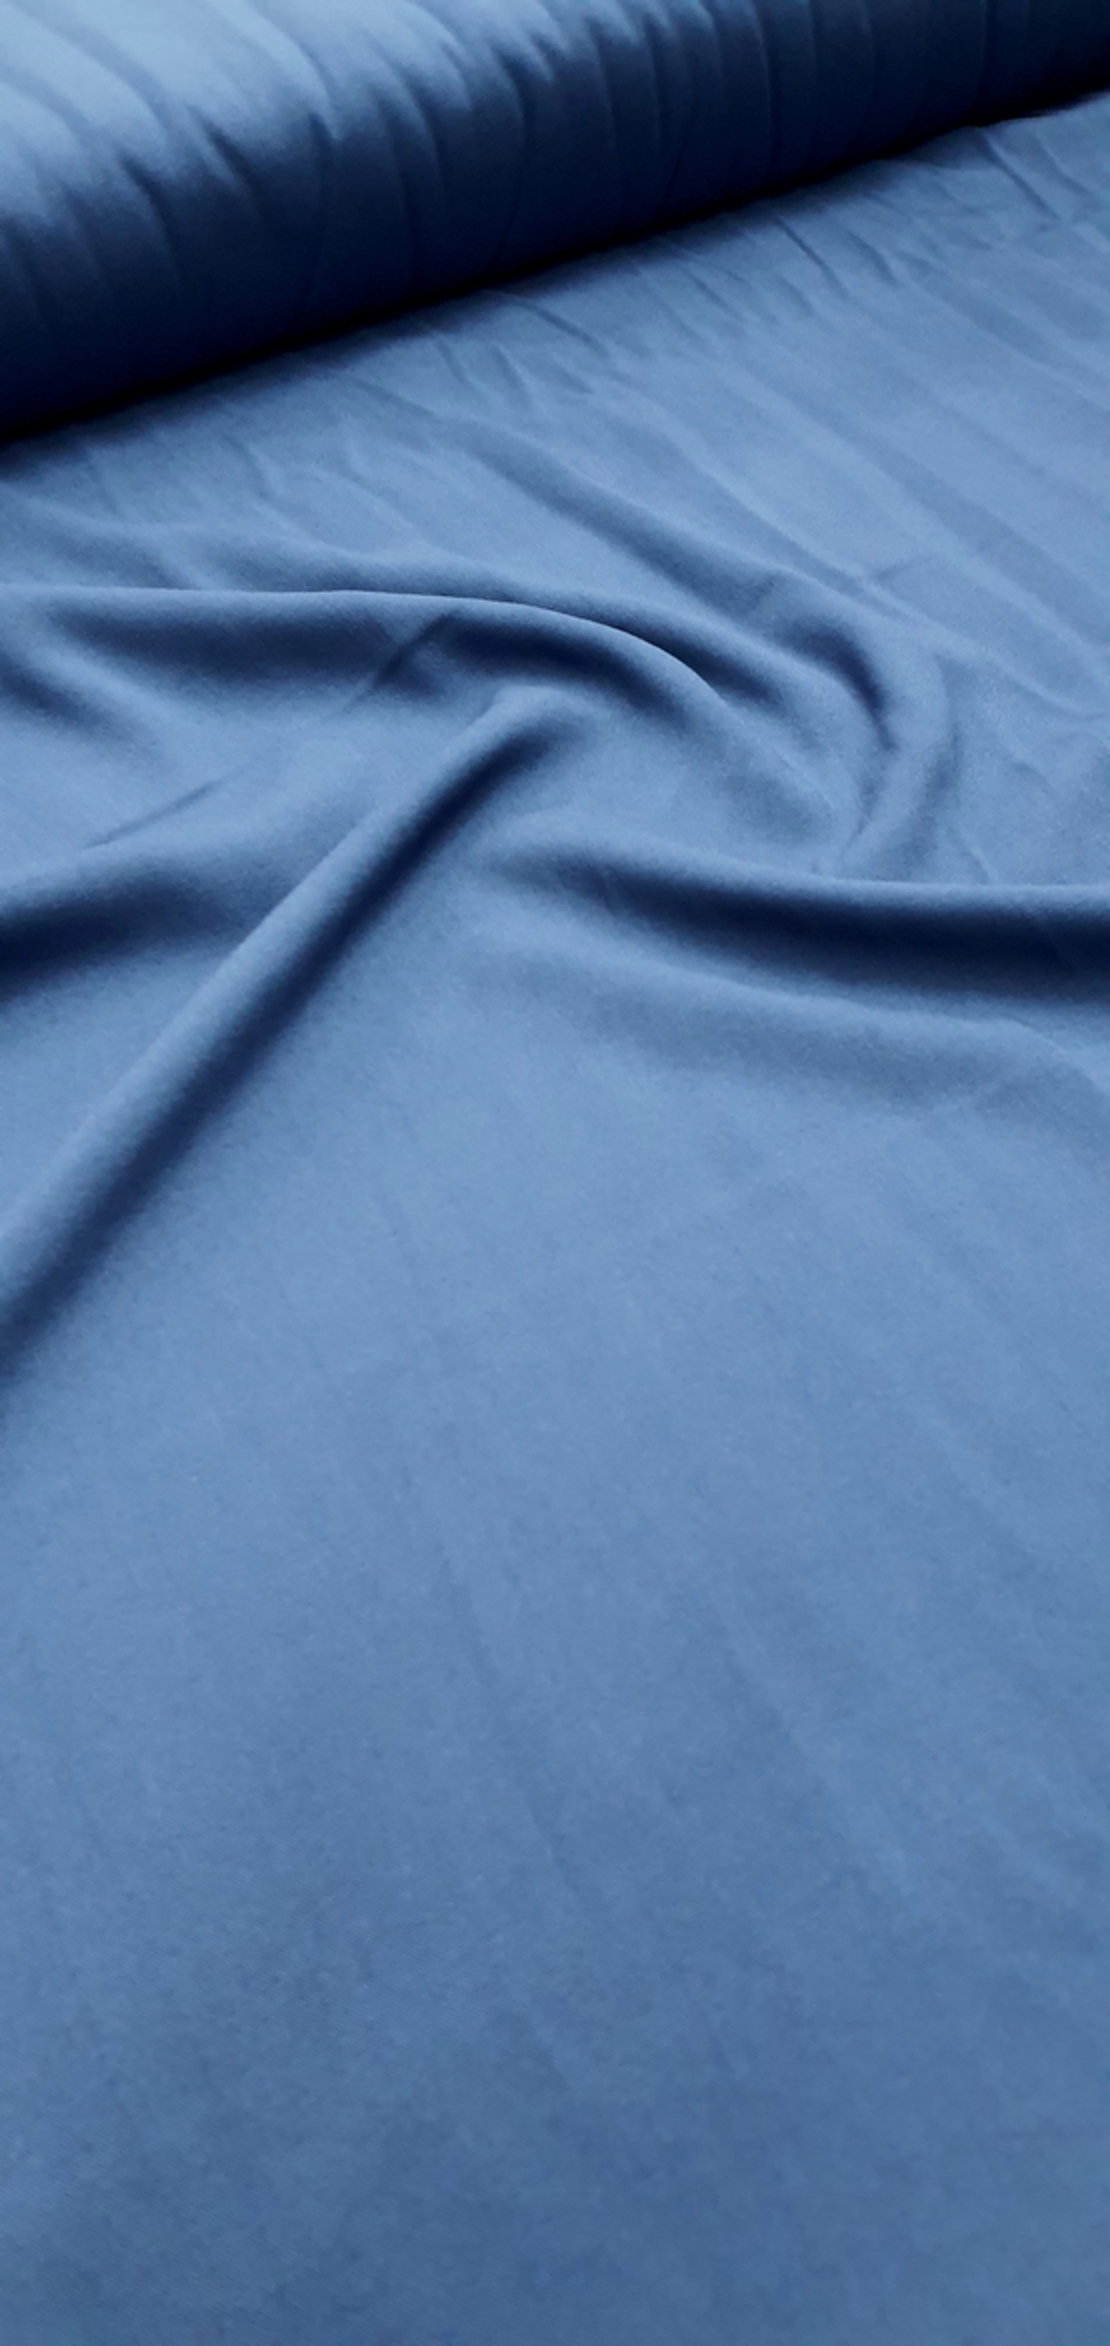 אריג ויסקוזה צבע כחול אינדיגו